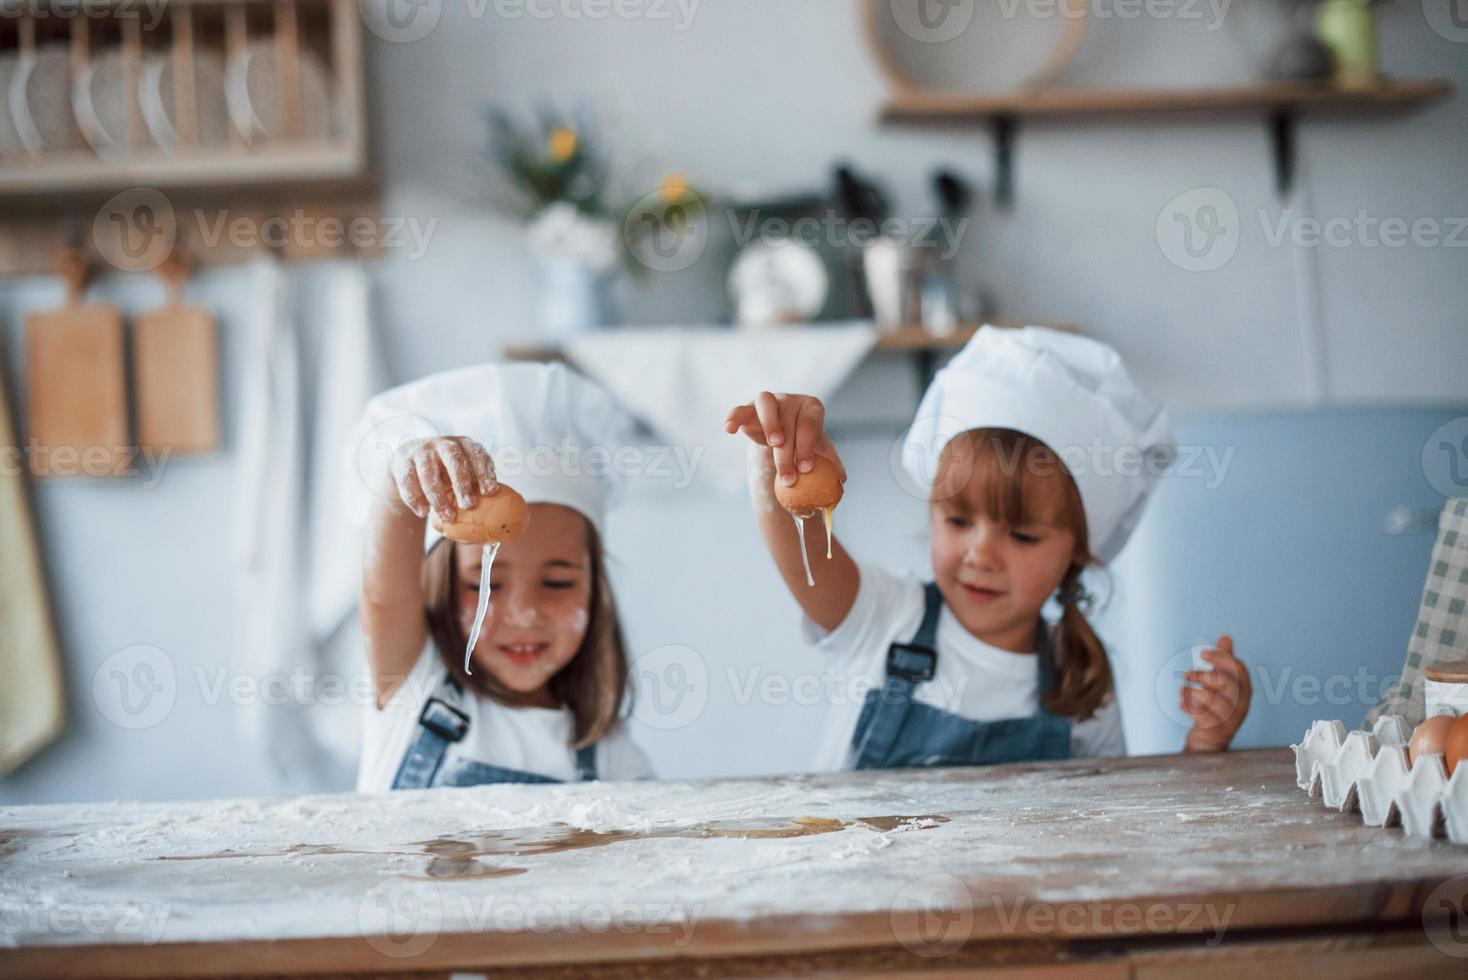 brincando com ovos. filhos de família em uniforme de chef branco preparando comida na cozinha foto